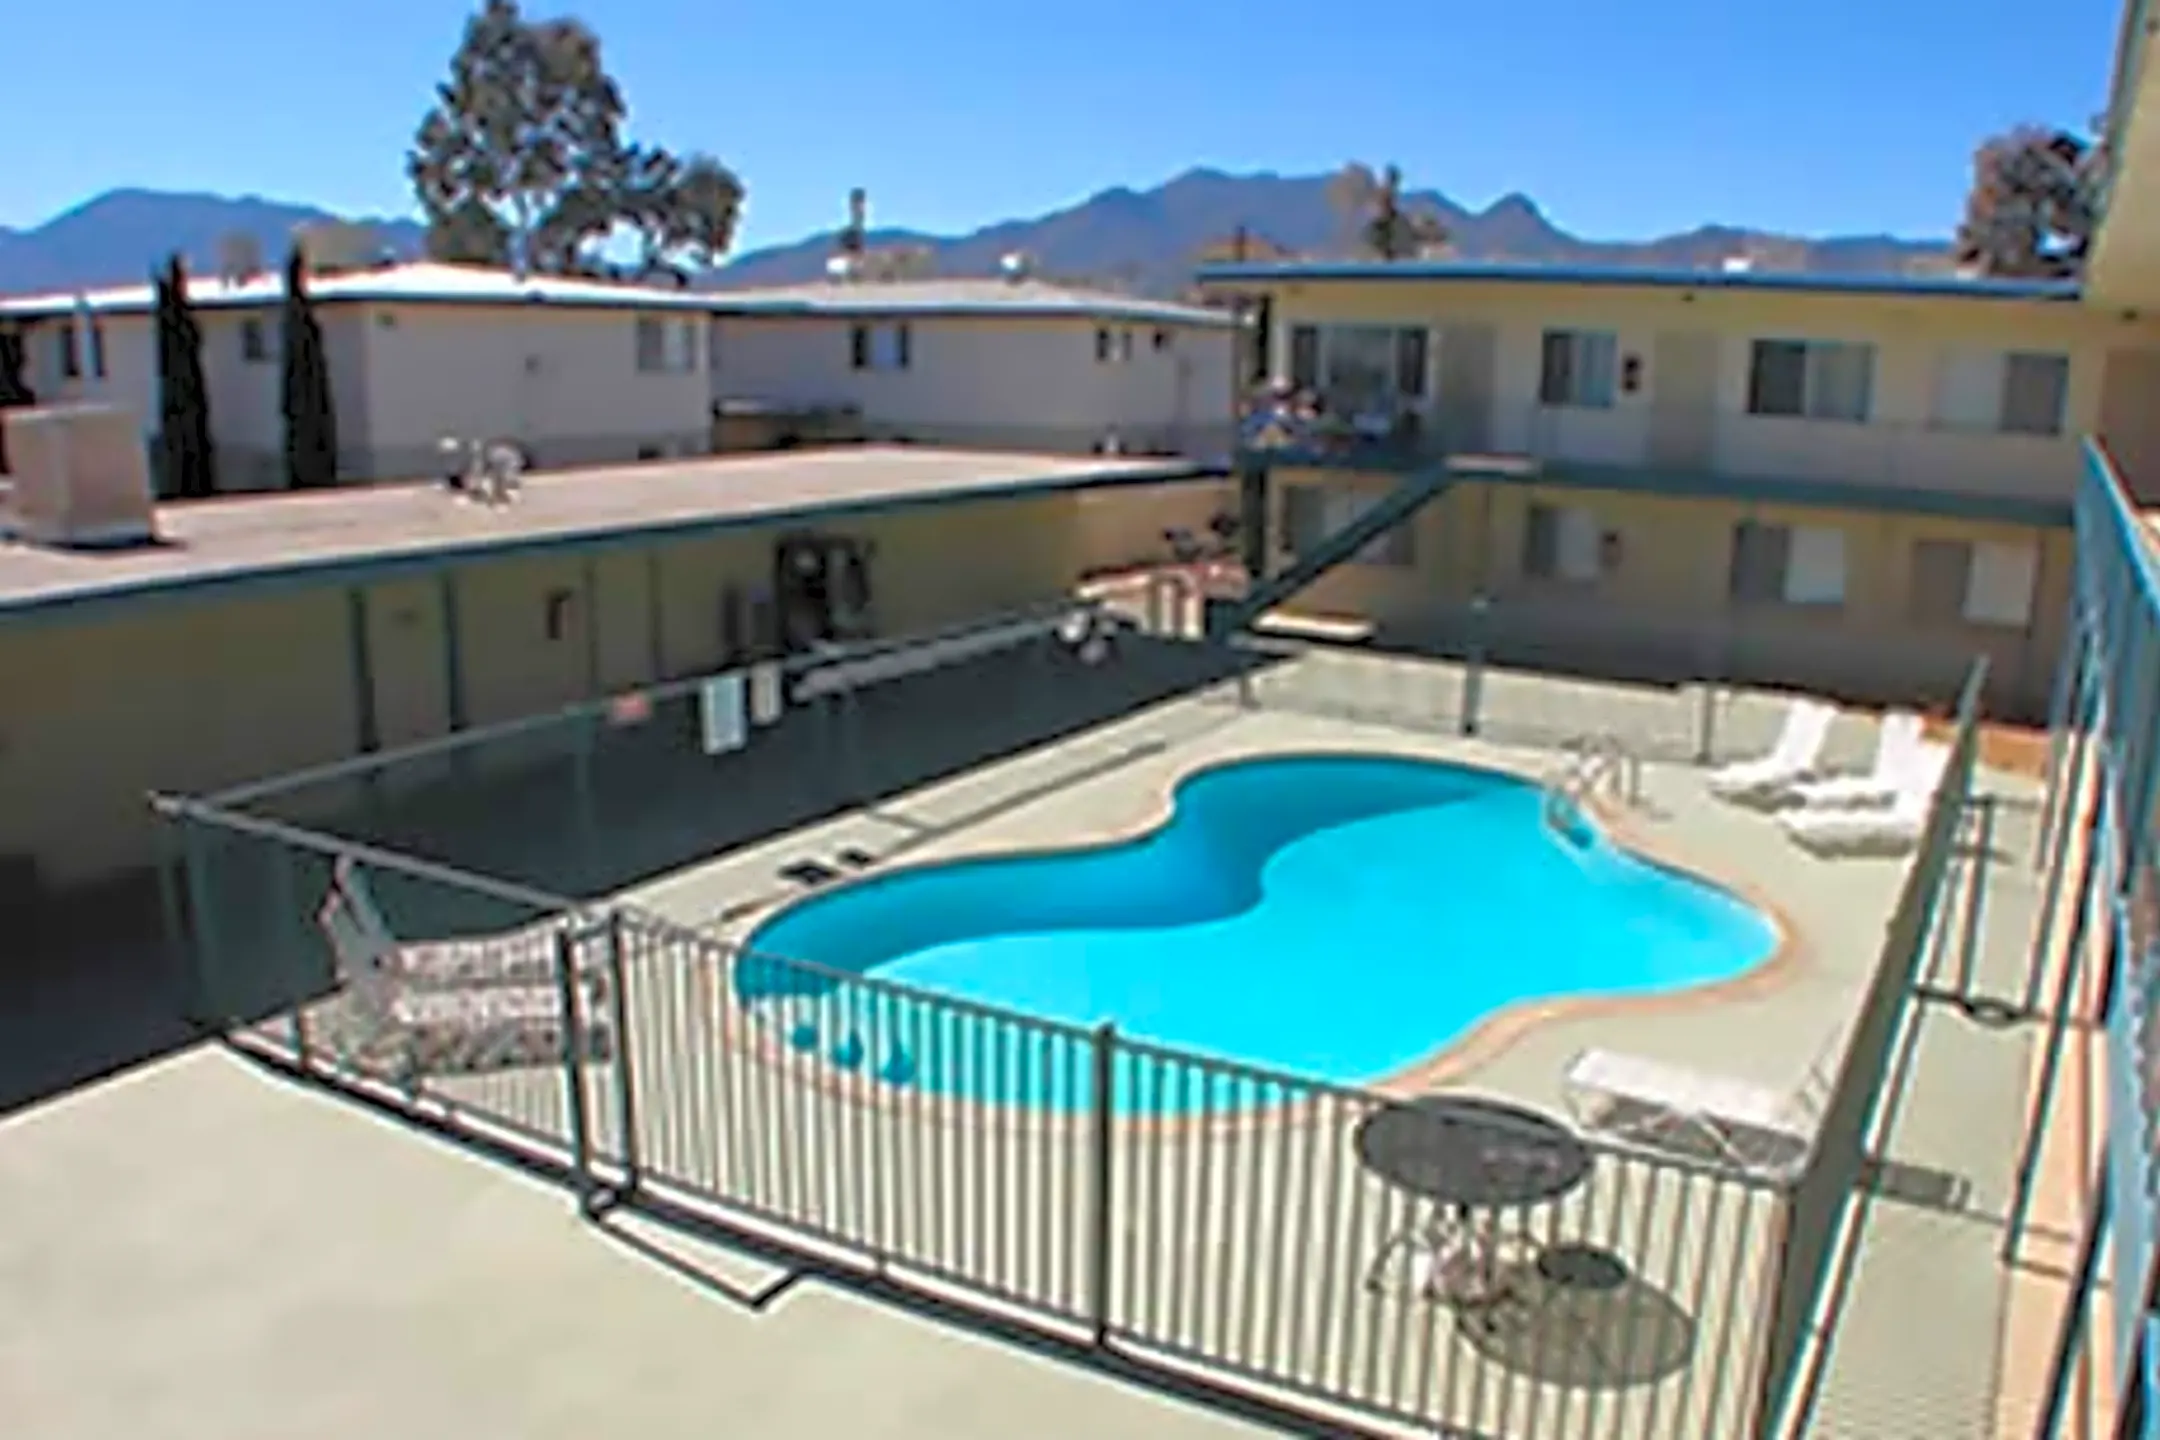 Westwood Village Apartments - Sierra Vista, AZ